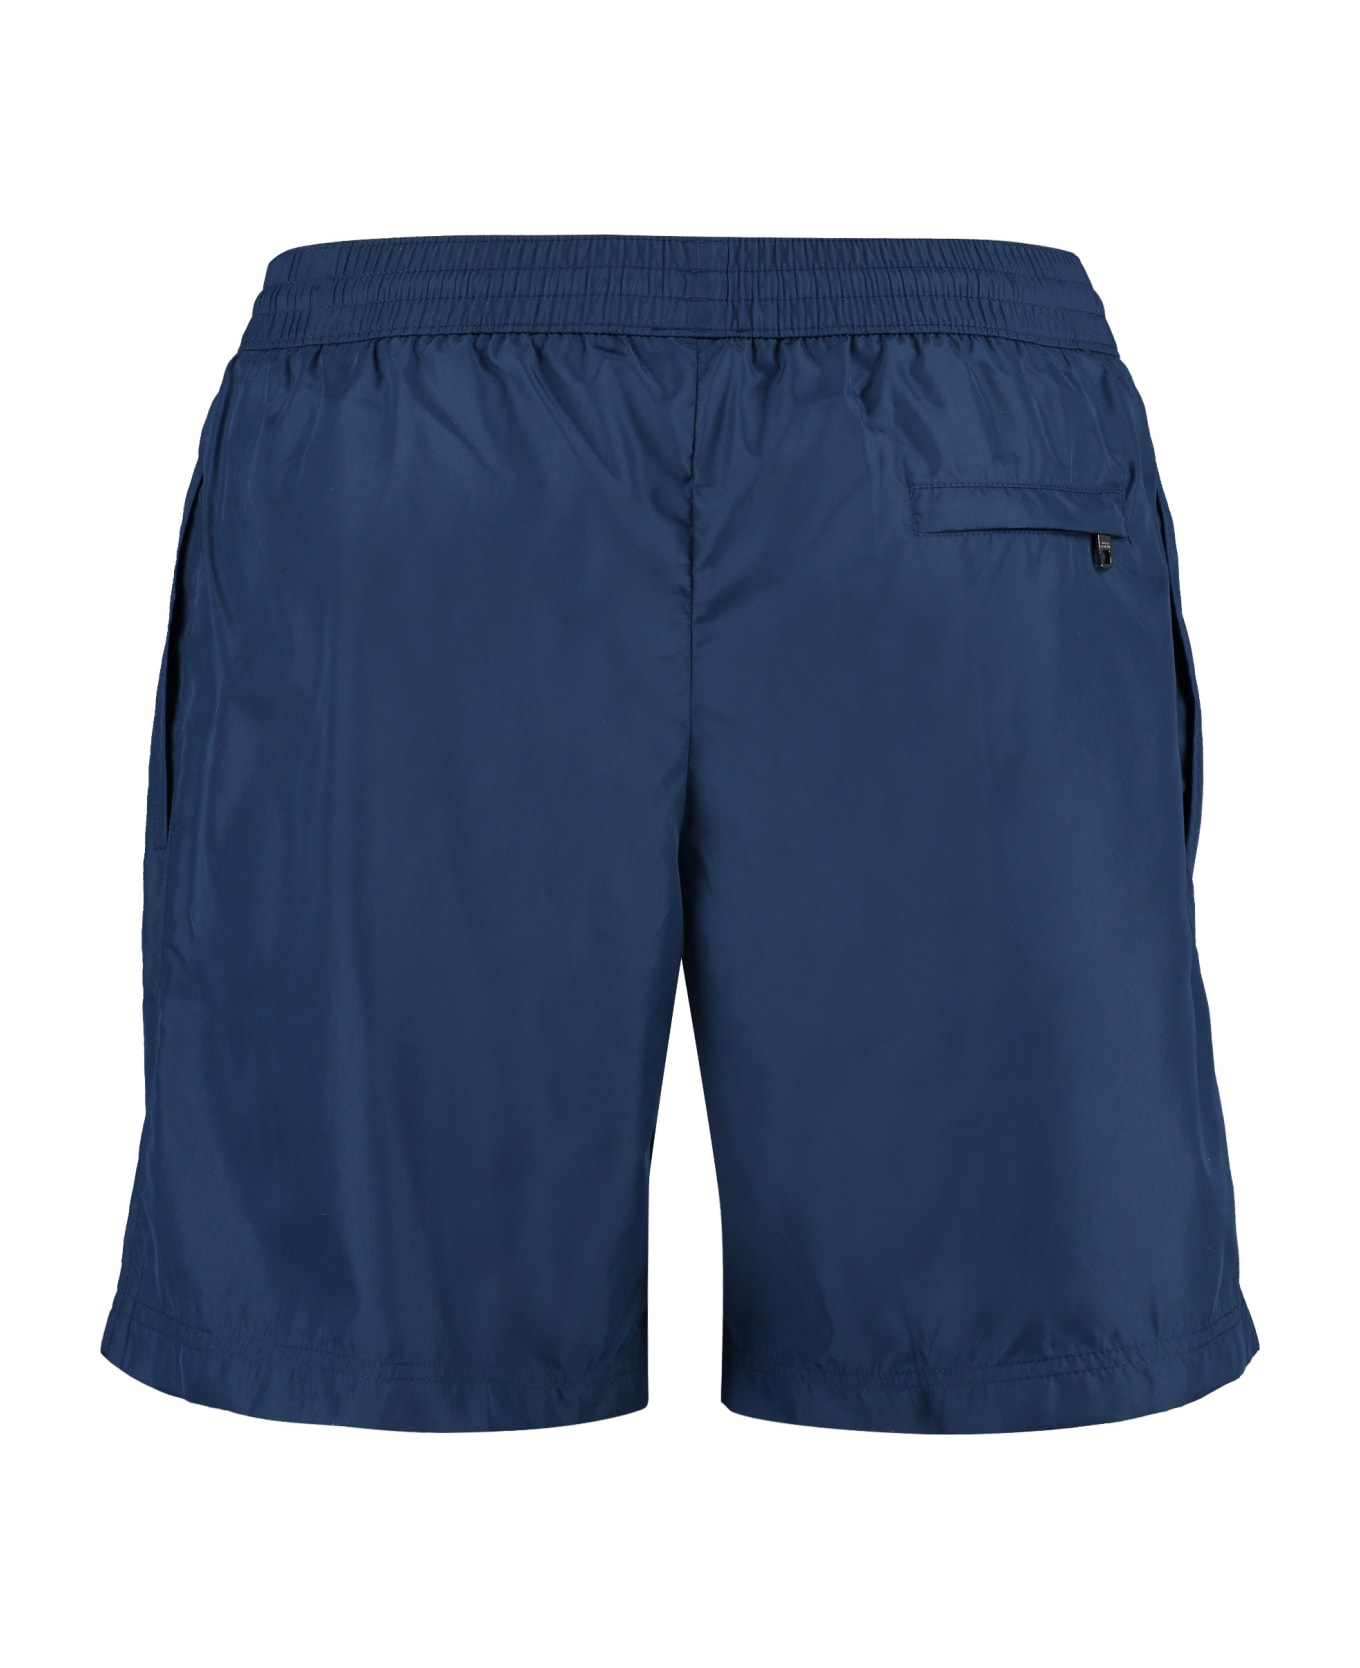 Dolce & Gabbana Swim Shorts - blue